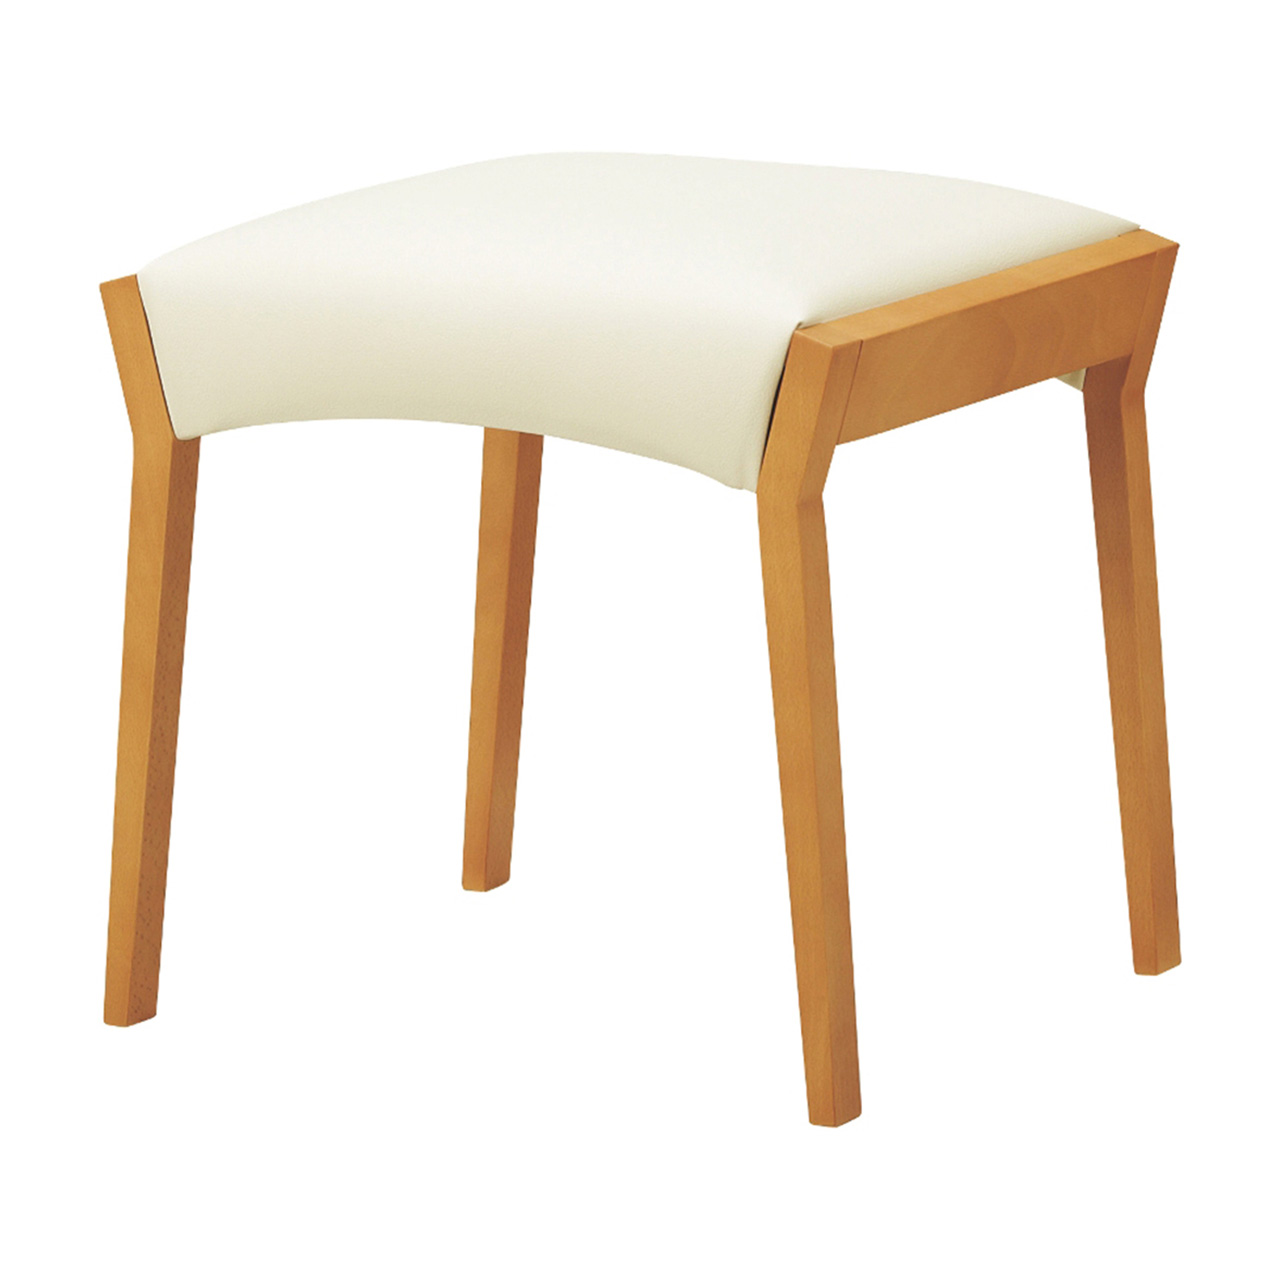 W211 生産終了 スツール 木製椅子 | 店舗家具・飲食店家具・業務用家具